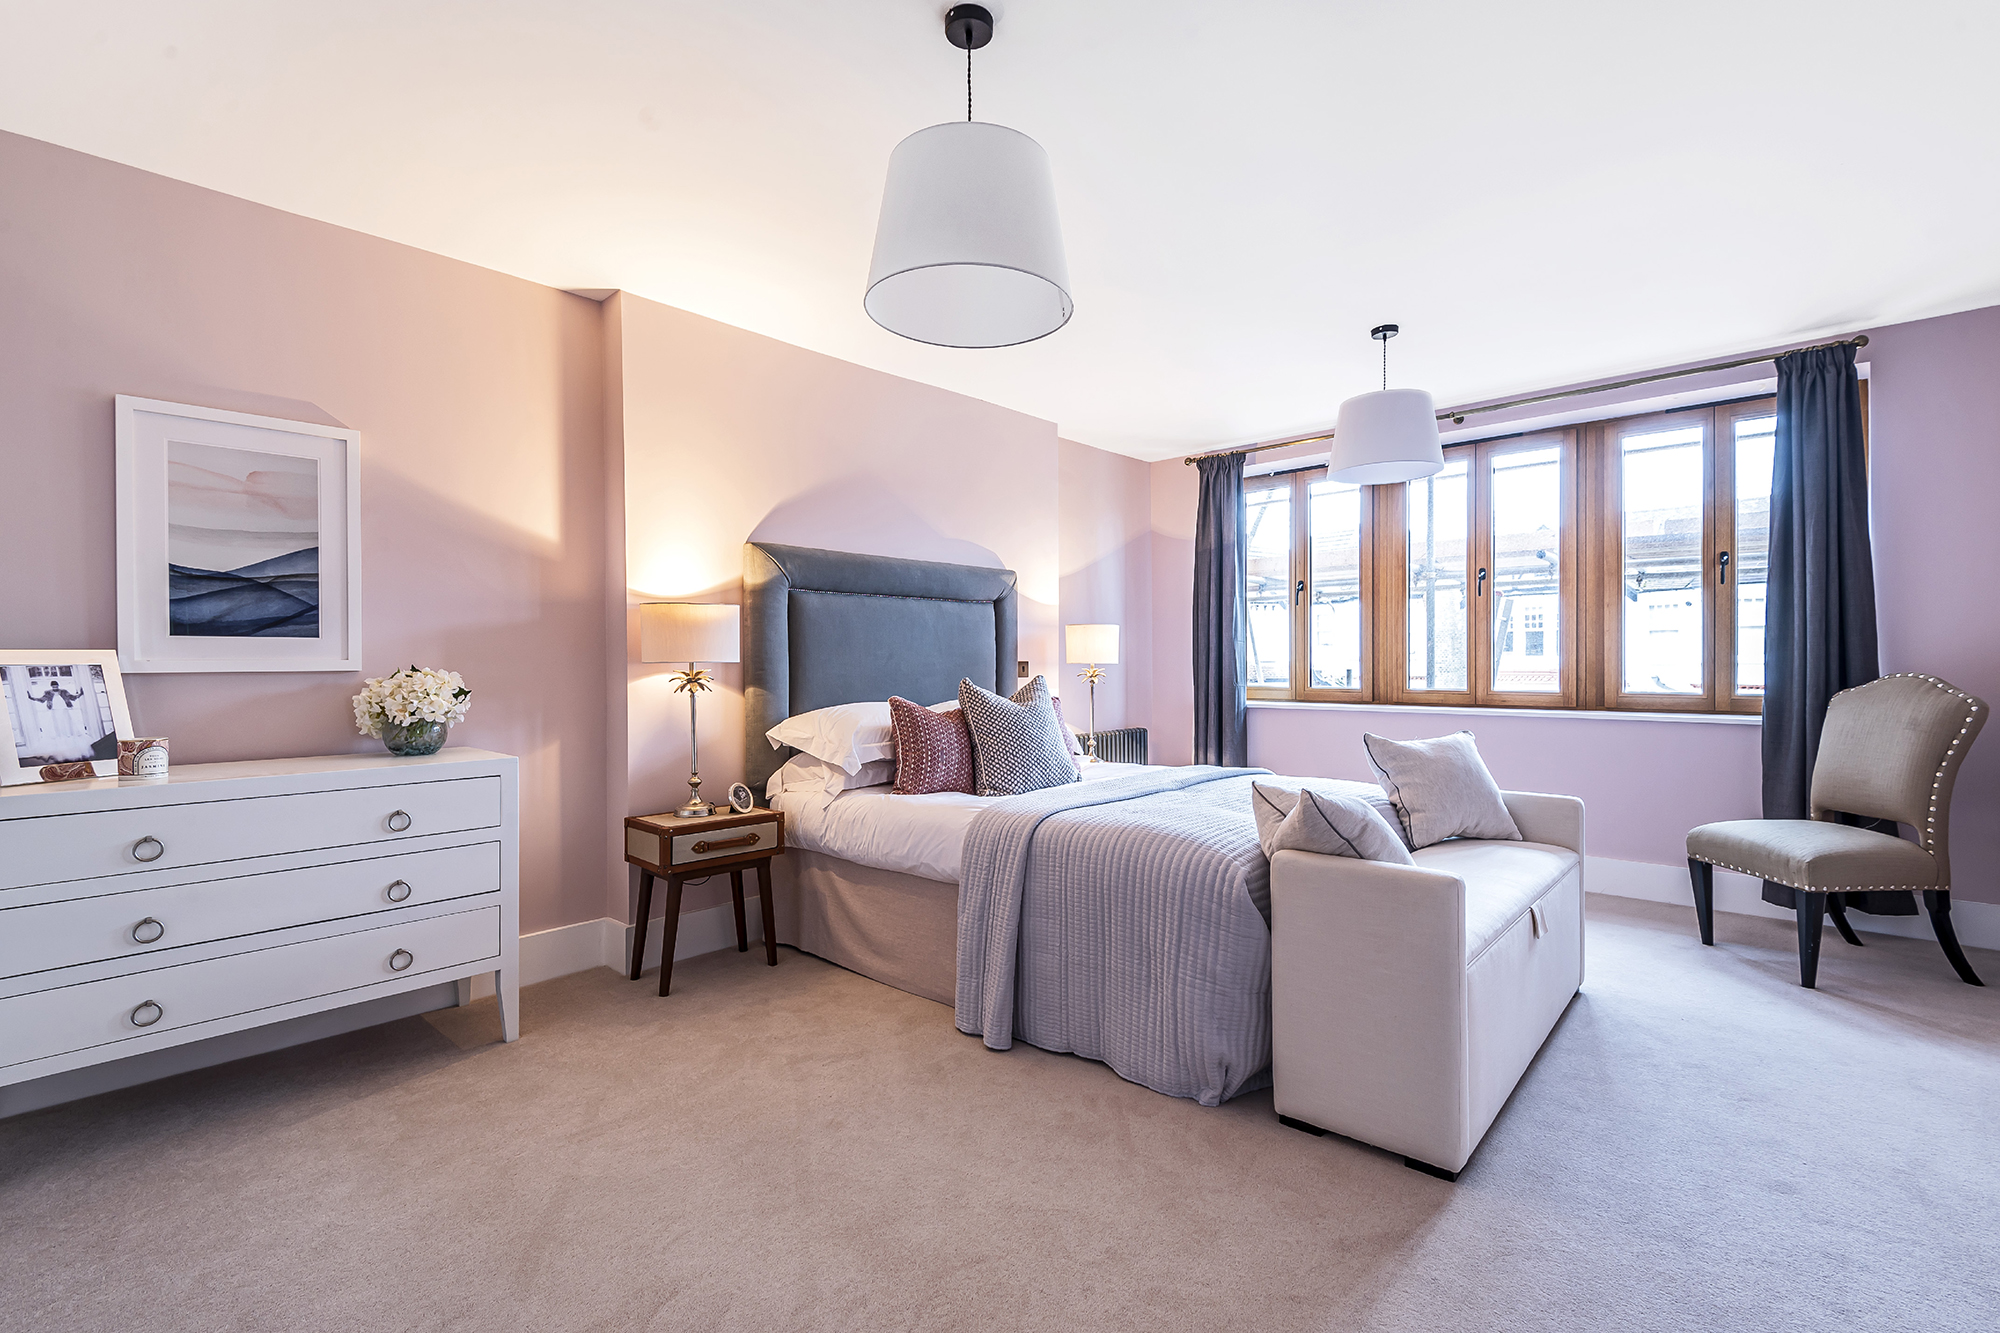 Luxury interior design showing bedroom